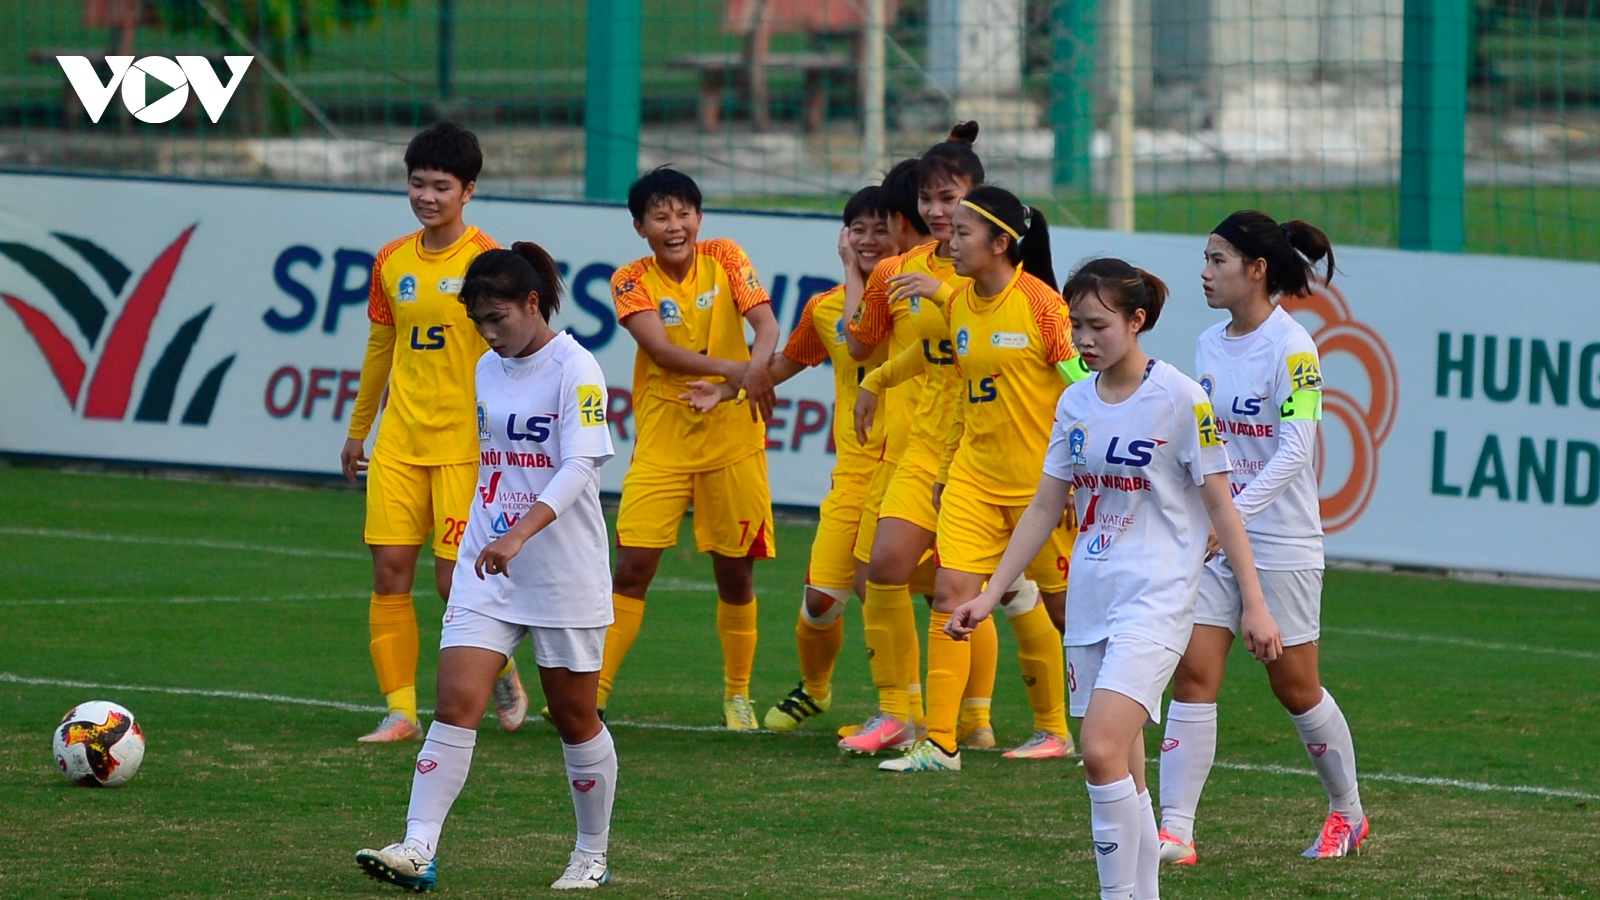 Huỳnh Như ghi bàn, TPHCM I vô địch lượt đi Giải bóng đá nữ VĐQG 2020